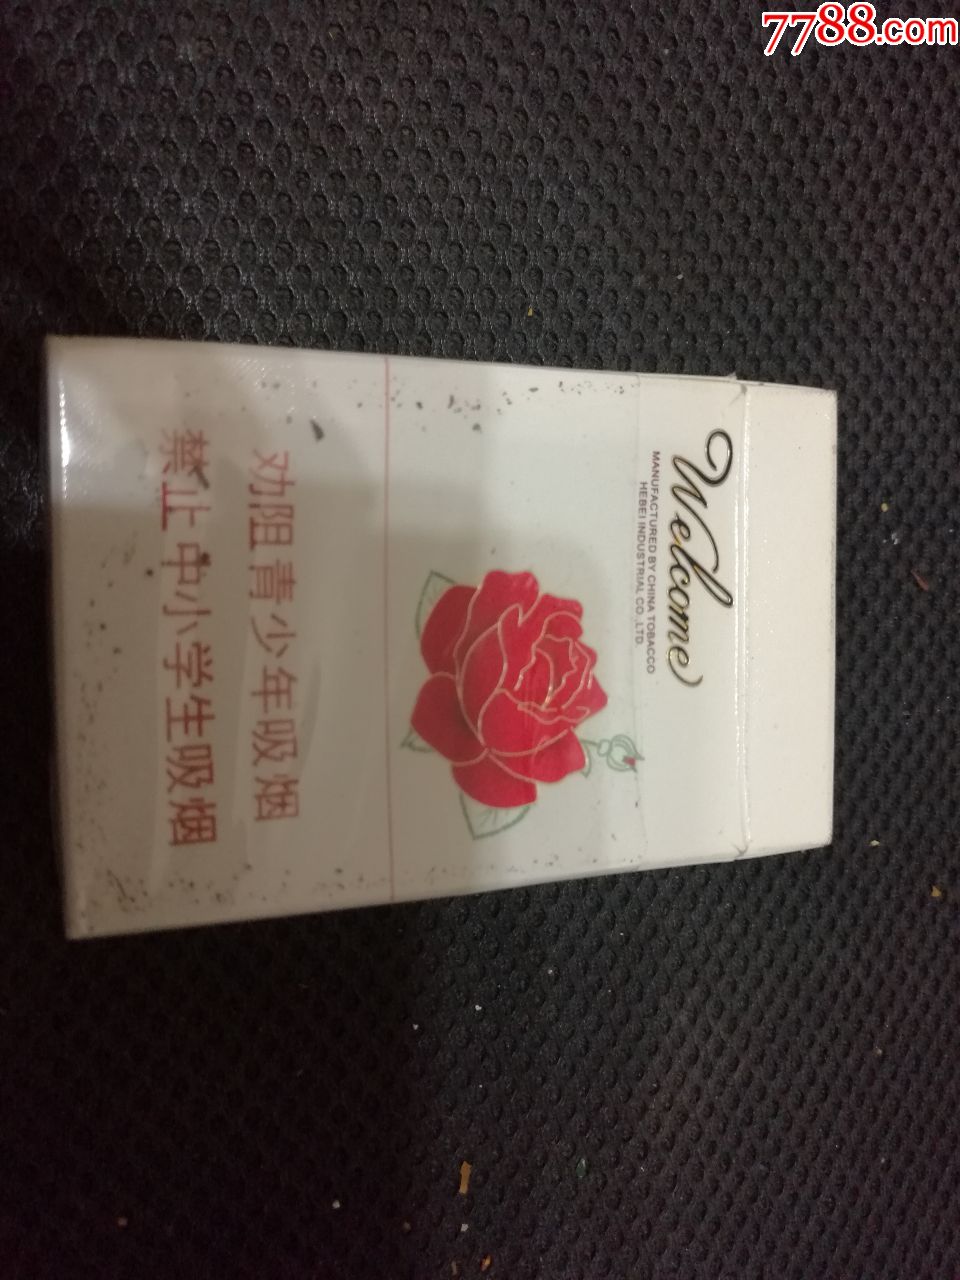 烟盒上有朵花的烟图片图片